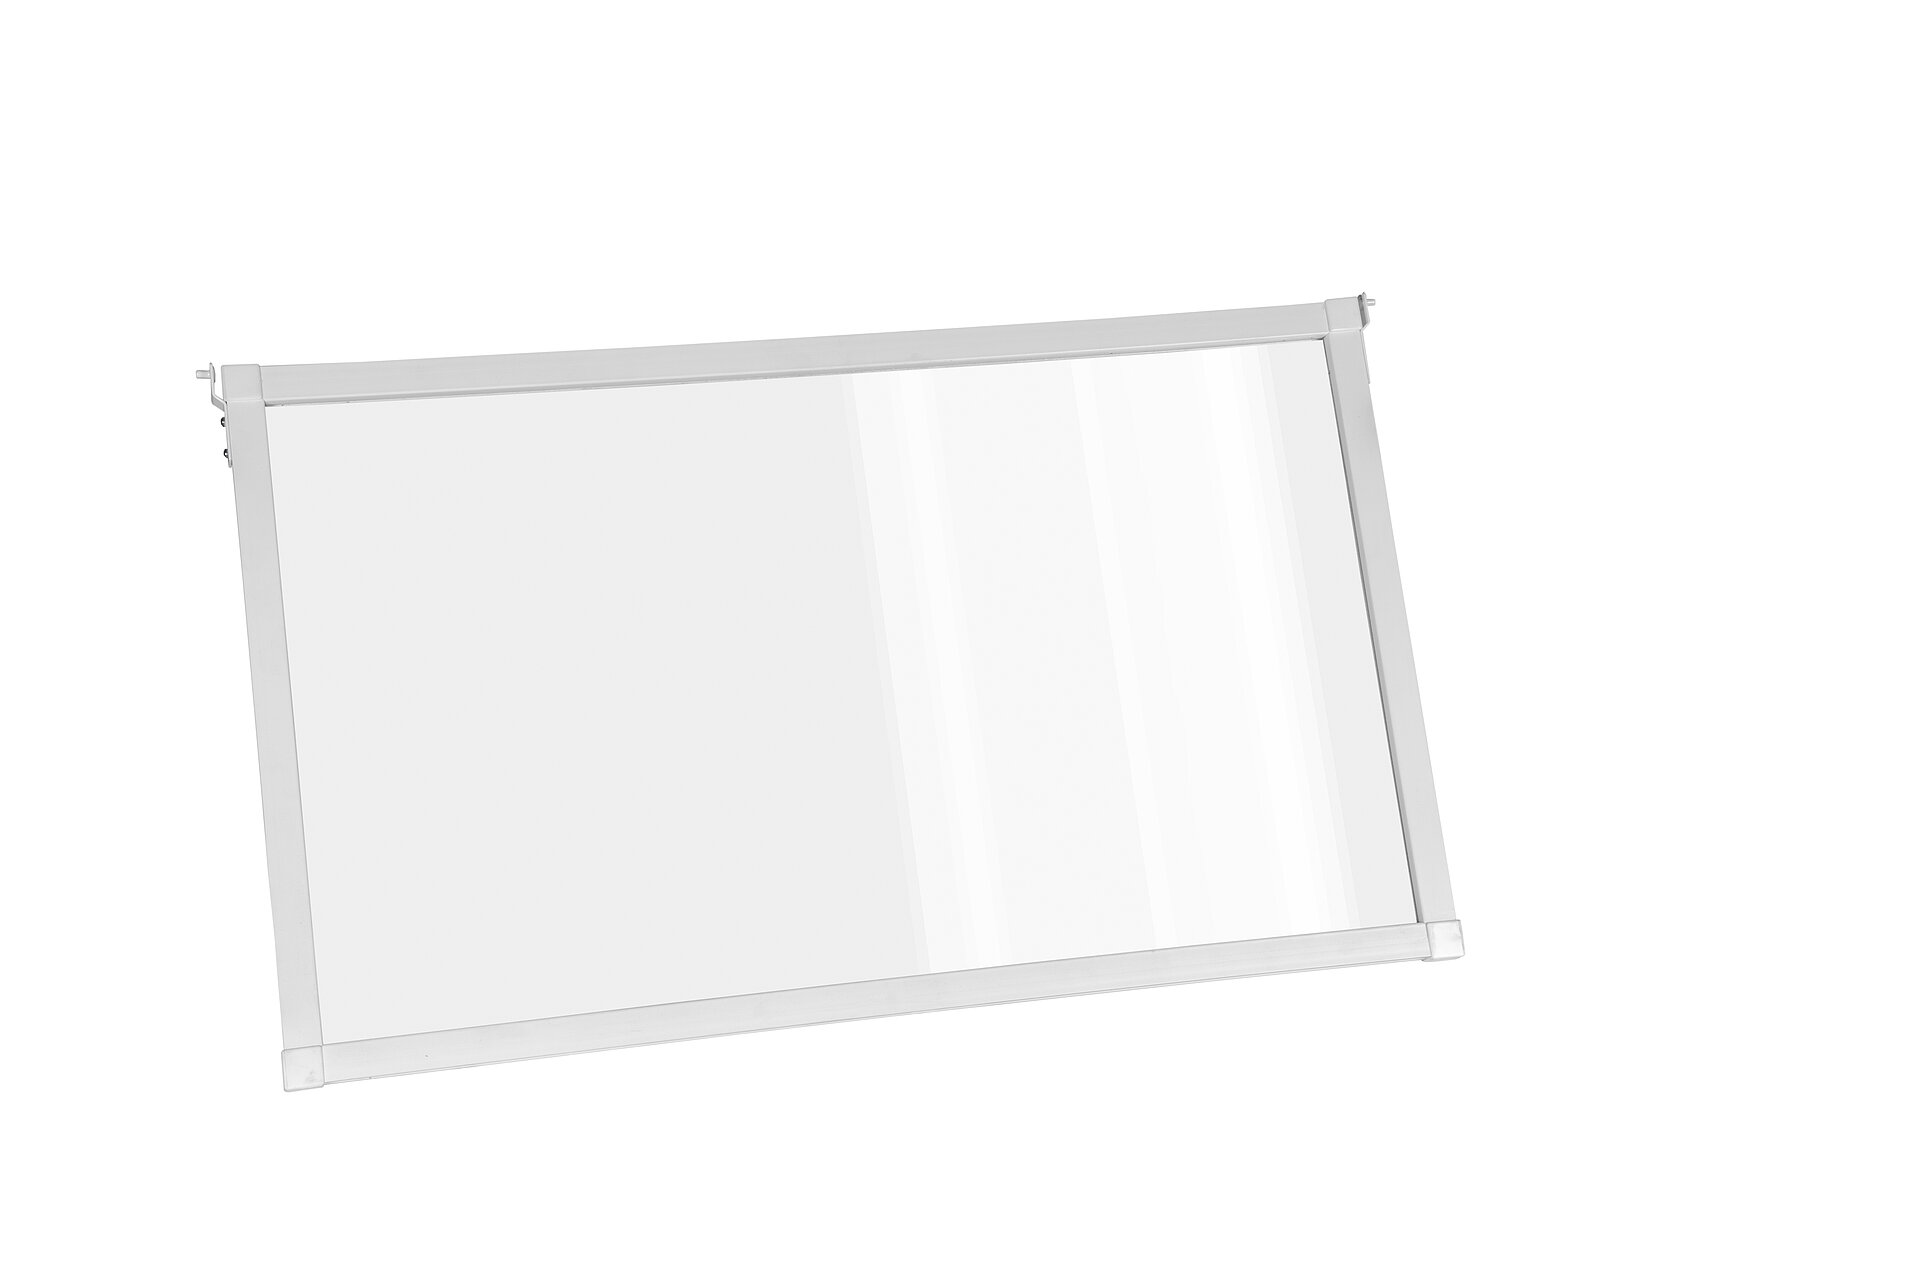 STR Abdeckung rauchglas für Klingeltaster, 57 x 15 mm